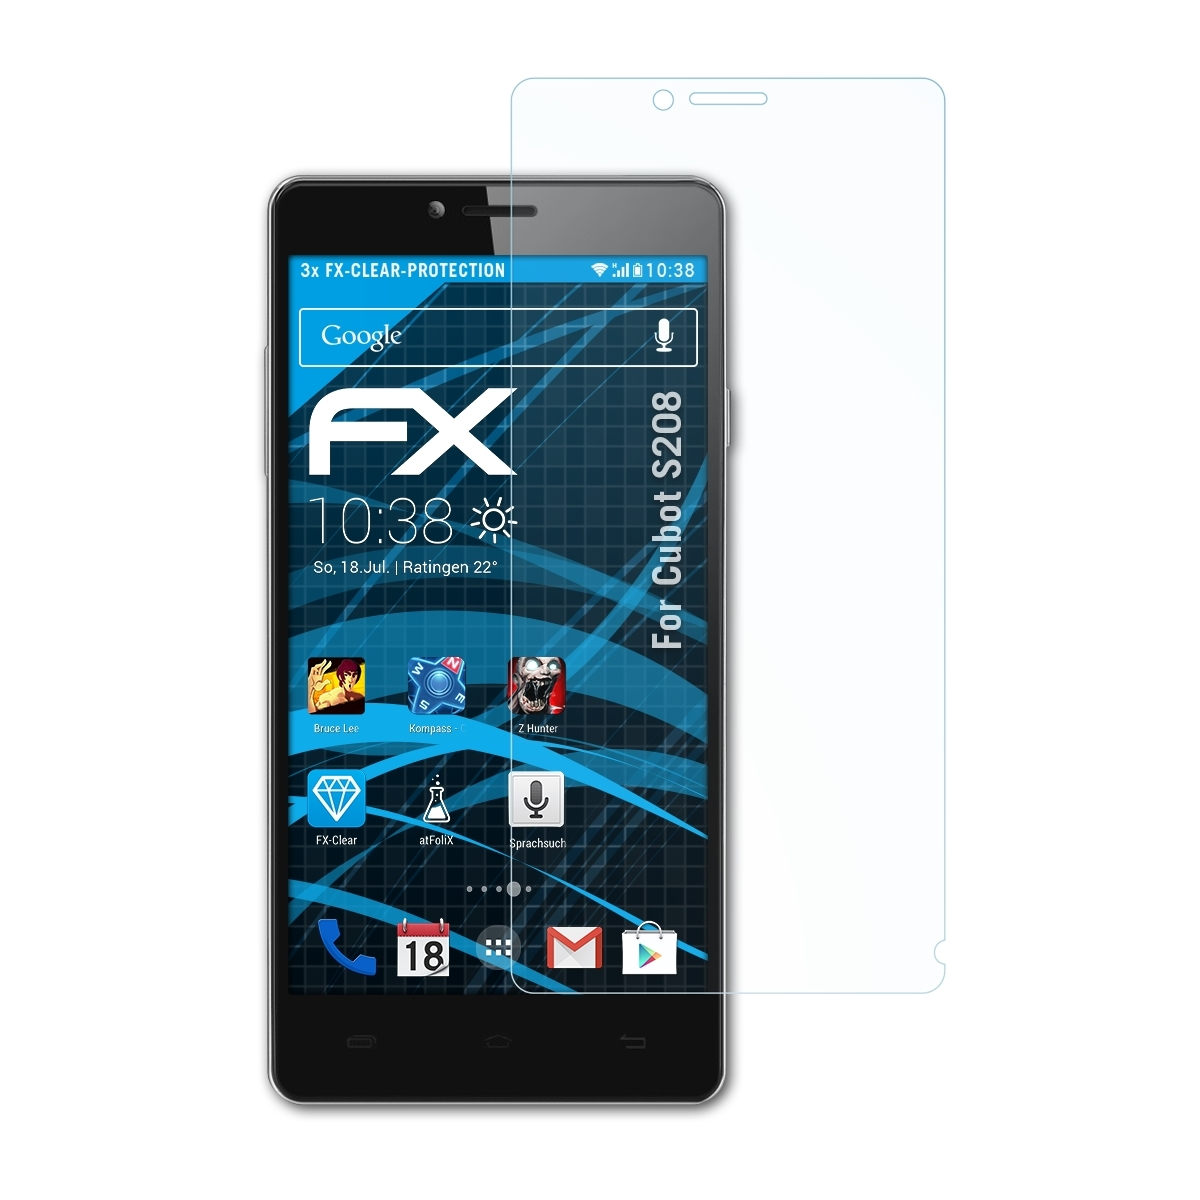 ATFOLIX 3x FX-Clear Displayschutz(für S208) Cubot